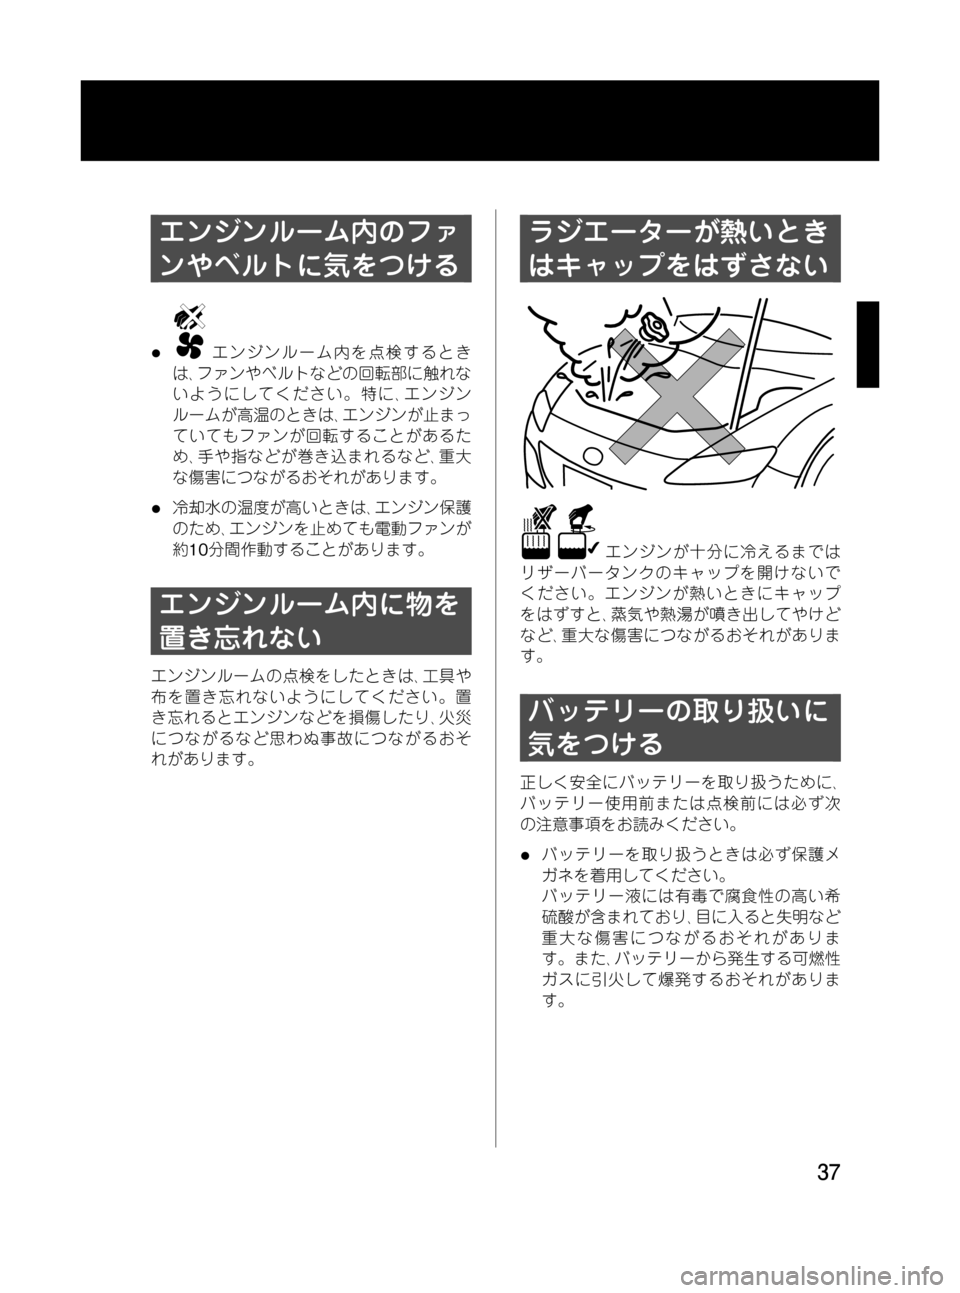 MAZDA MODEL RX 8 2008  取扱説明書 (in Japanese) Black plate (37,1)
エンジンルーム内のファ
ンやベルトに気をつける
lエンジンルーム内を点検するとき
は､ファンやベルトなどの回転部に触れな
いよ�